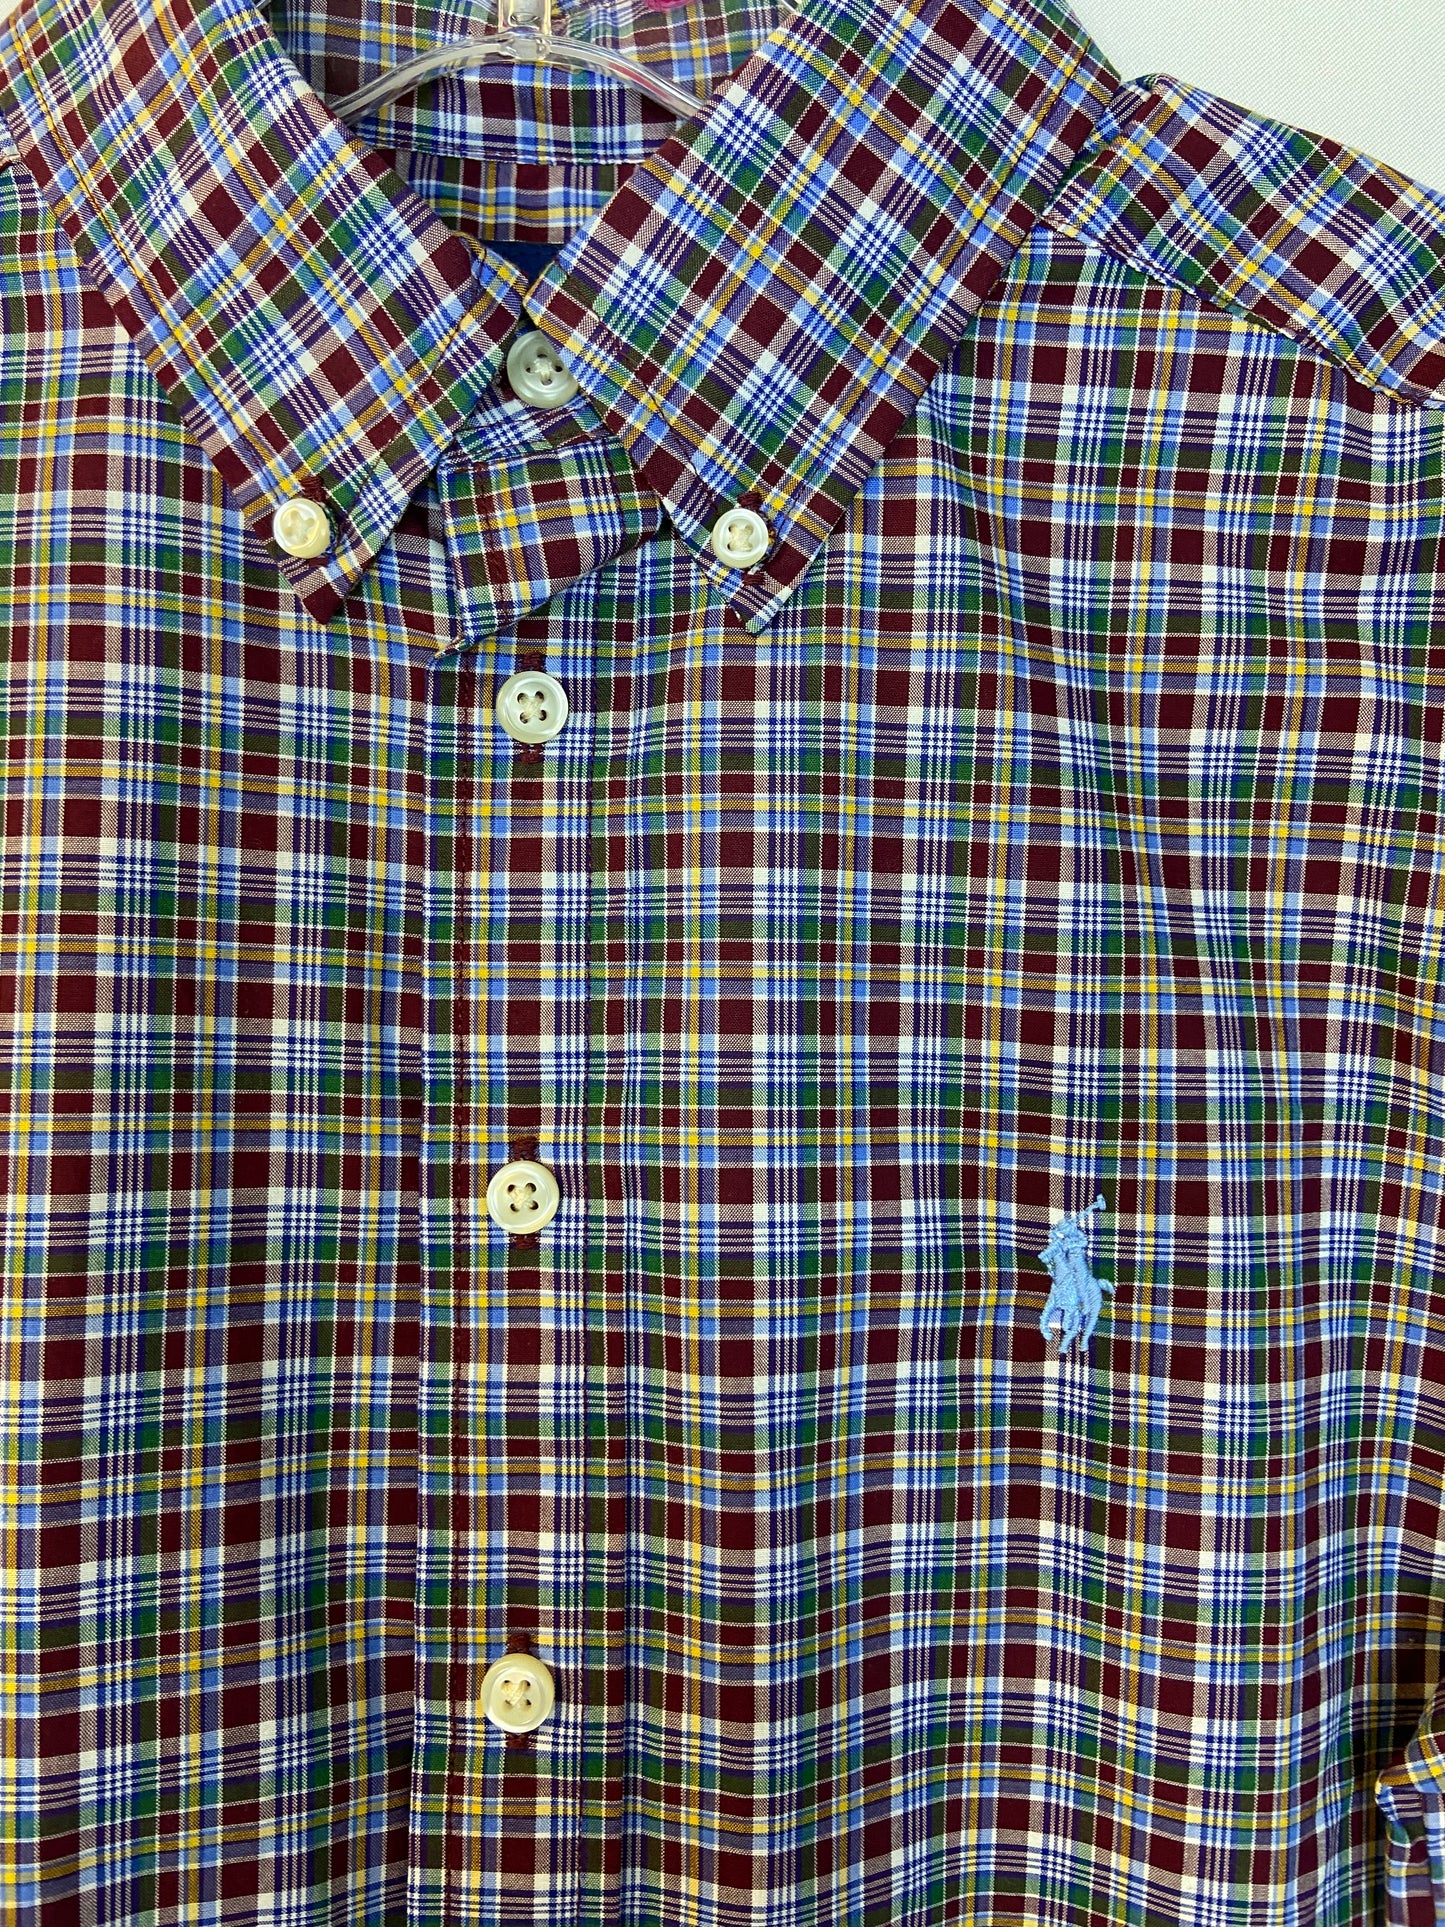 Ralph Lauren Size M Boy's Plaid Long-Sleeved Shirt